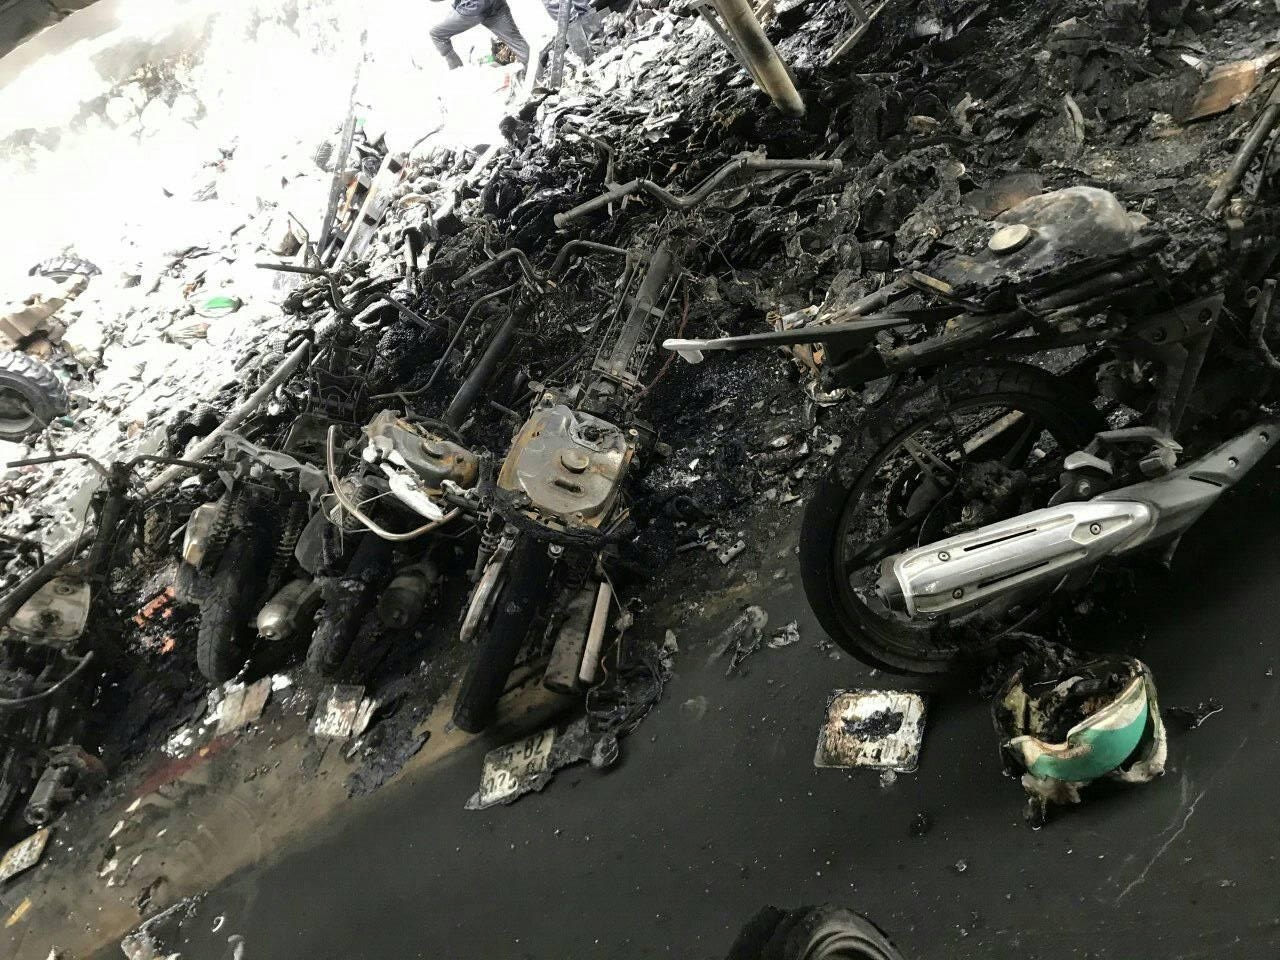 Vụ cháy tại Cụm công nghiệp Khánh Nhạc: Công ty sẽ bồi thường thiệt hại cho công nhân